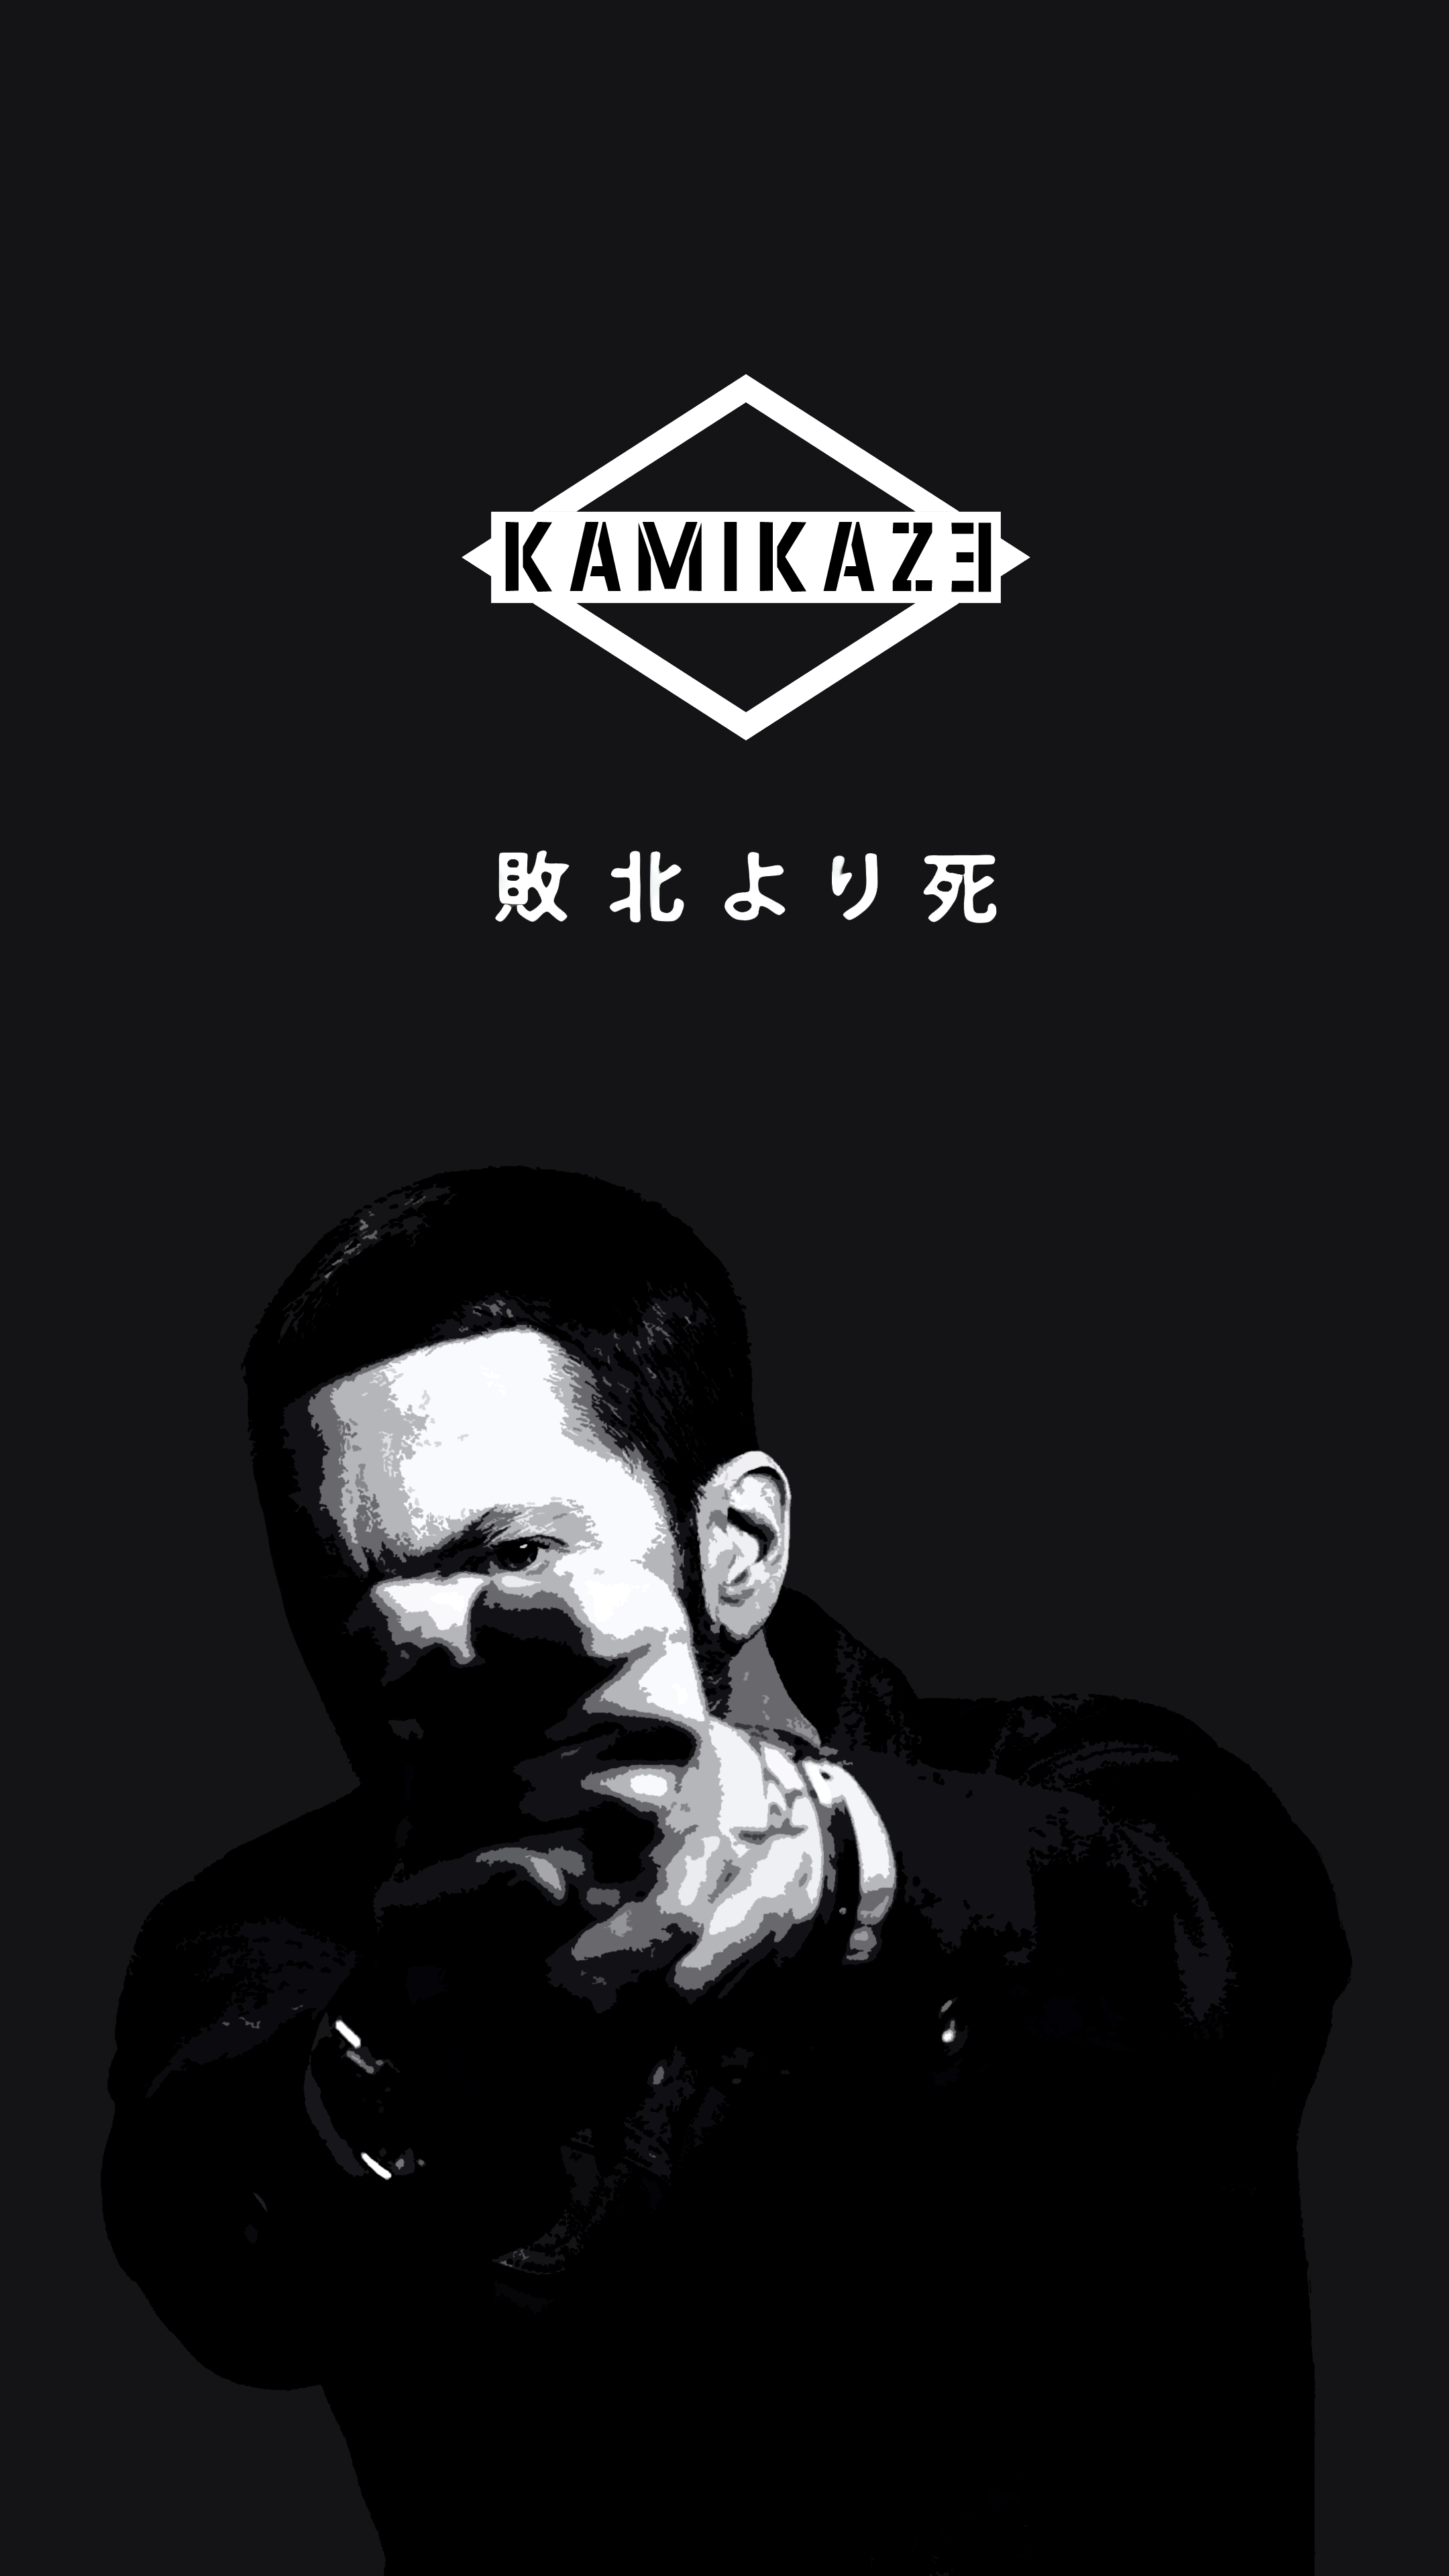 Eminem Album Cover iPhone Wallpaper